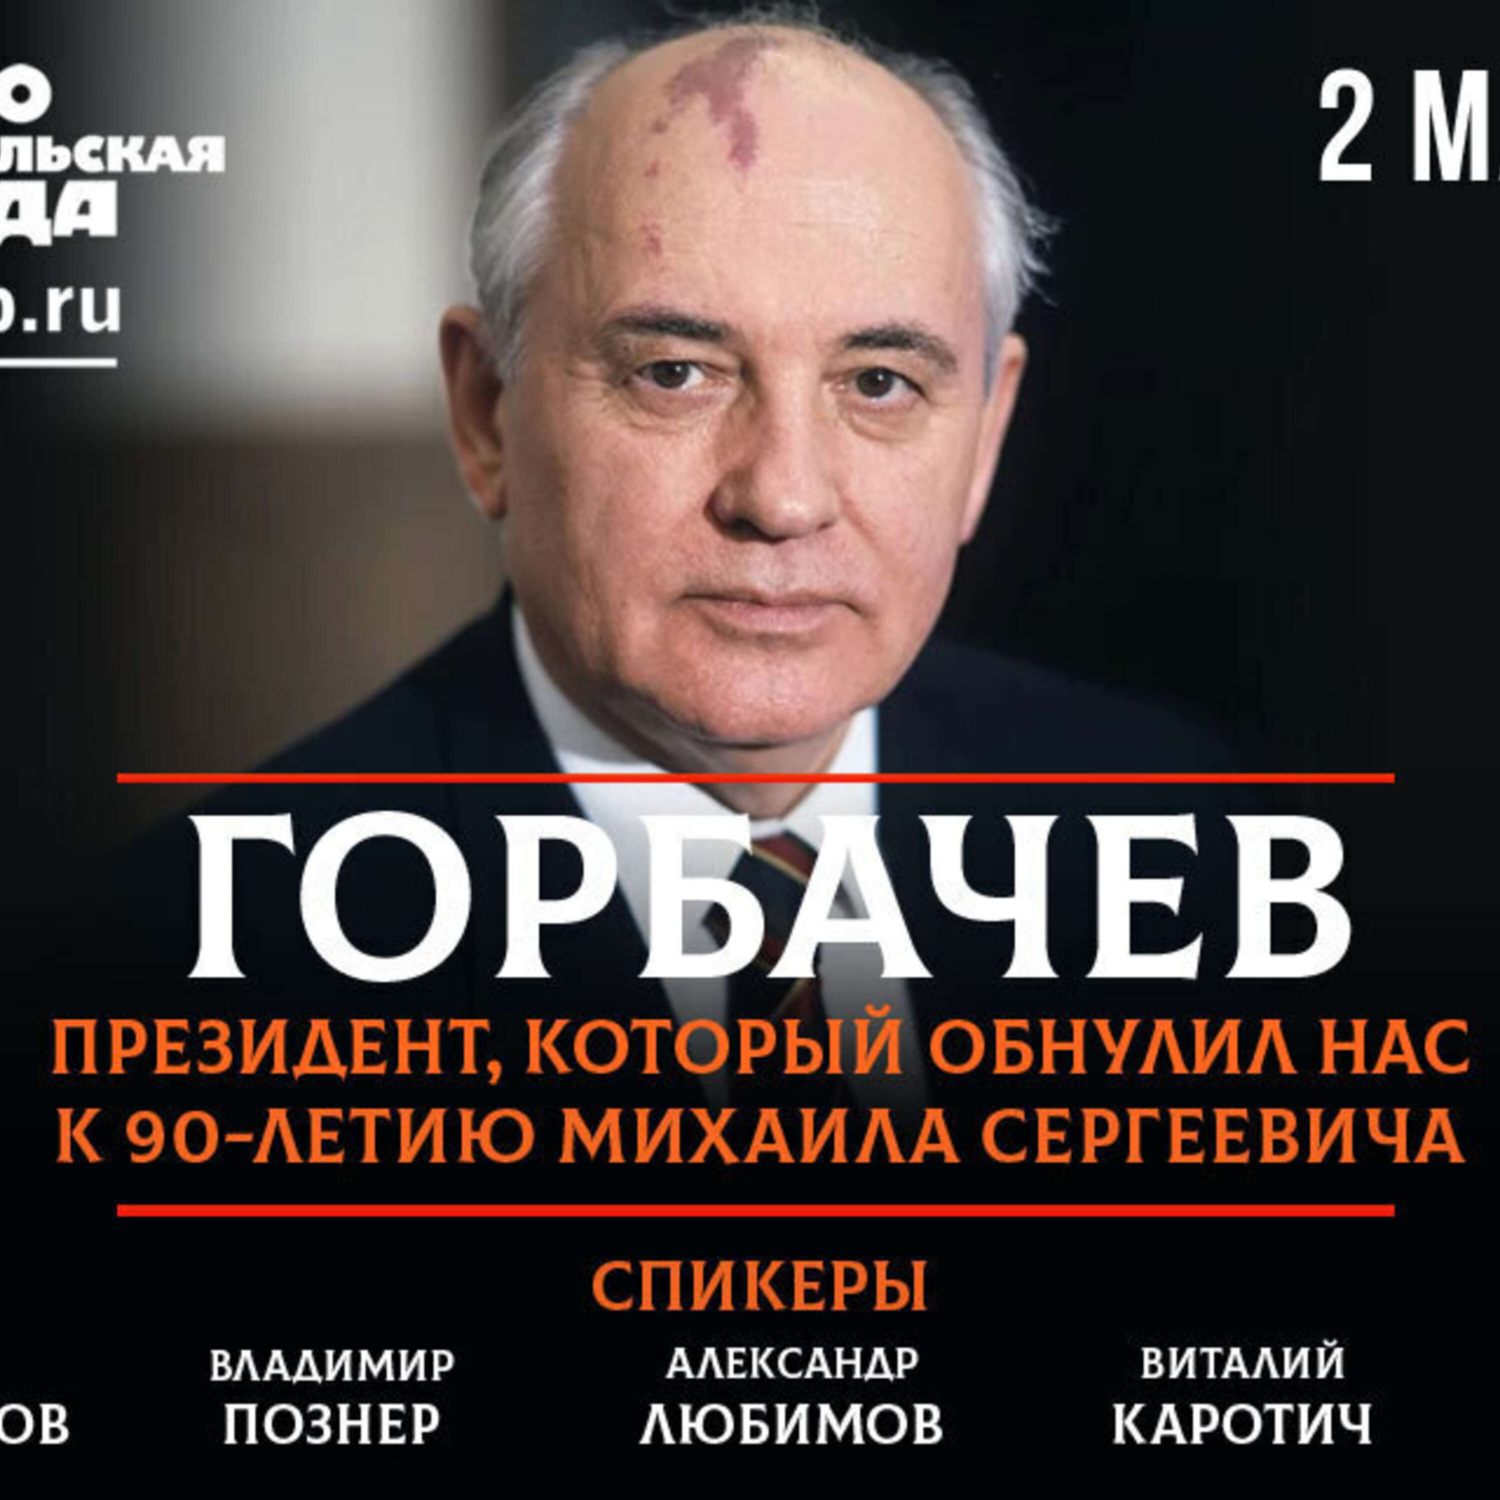 Сколько лет горбачев был у власти. Горбачев 2022. Горбачев в 2022 году. Книги о Горбачеве. Горбачев фото 2022.